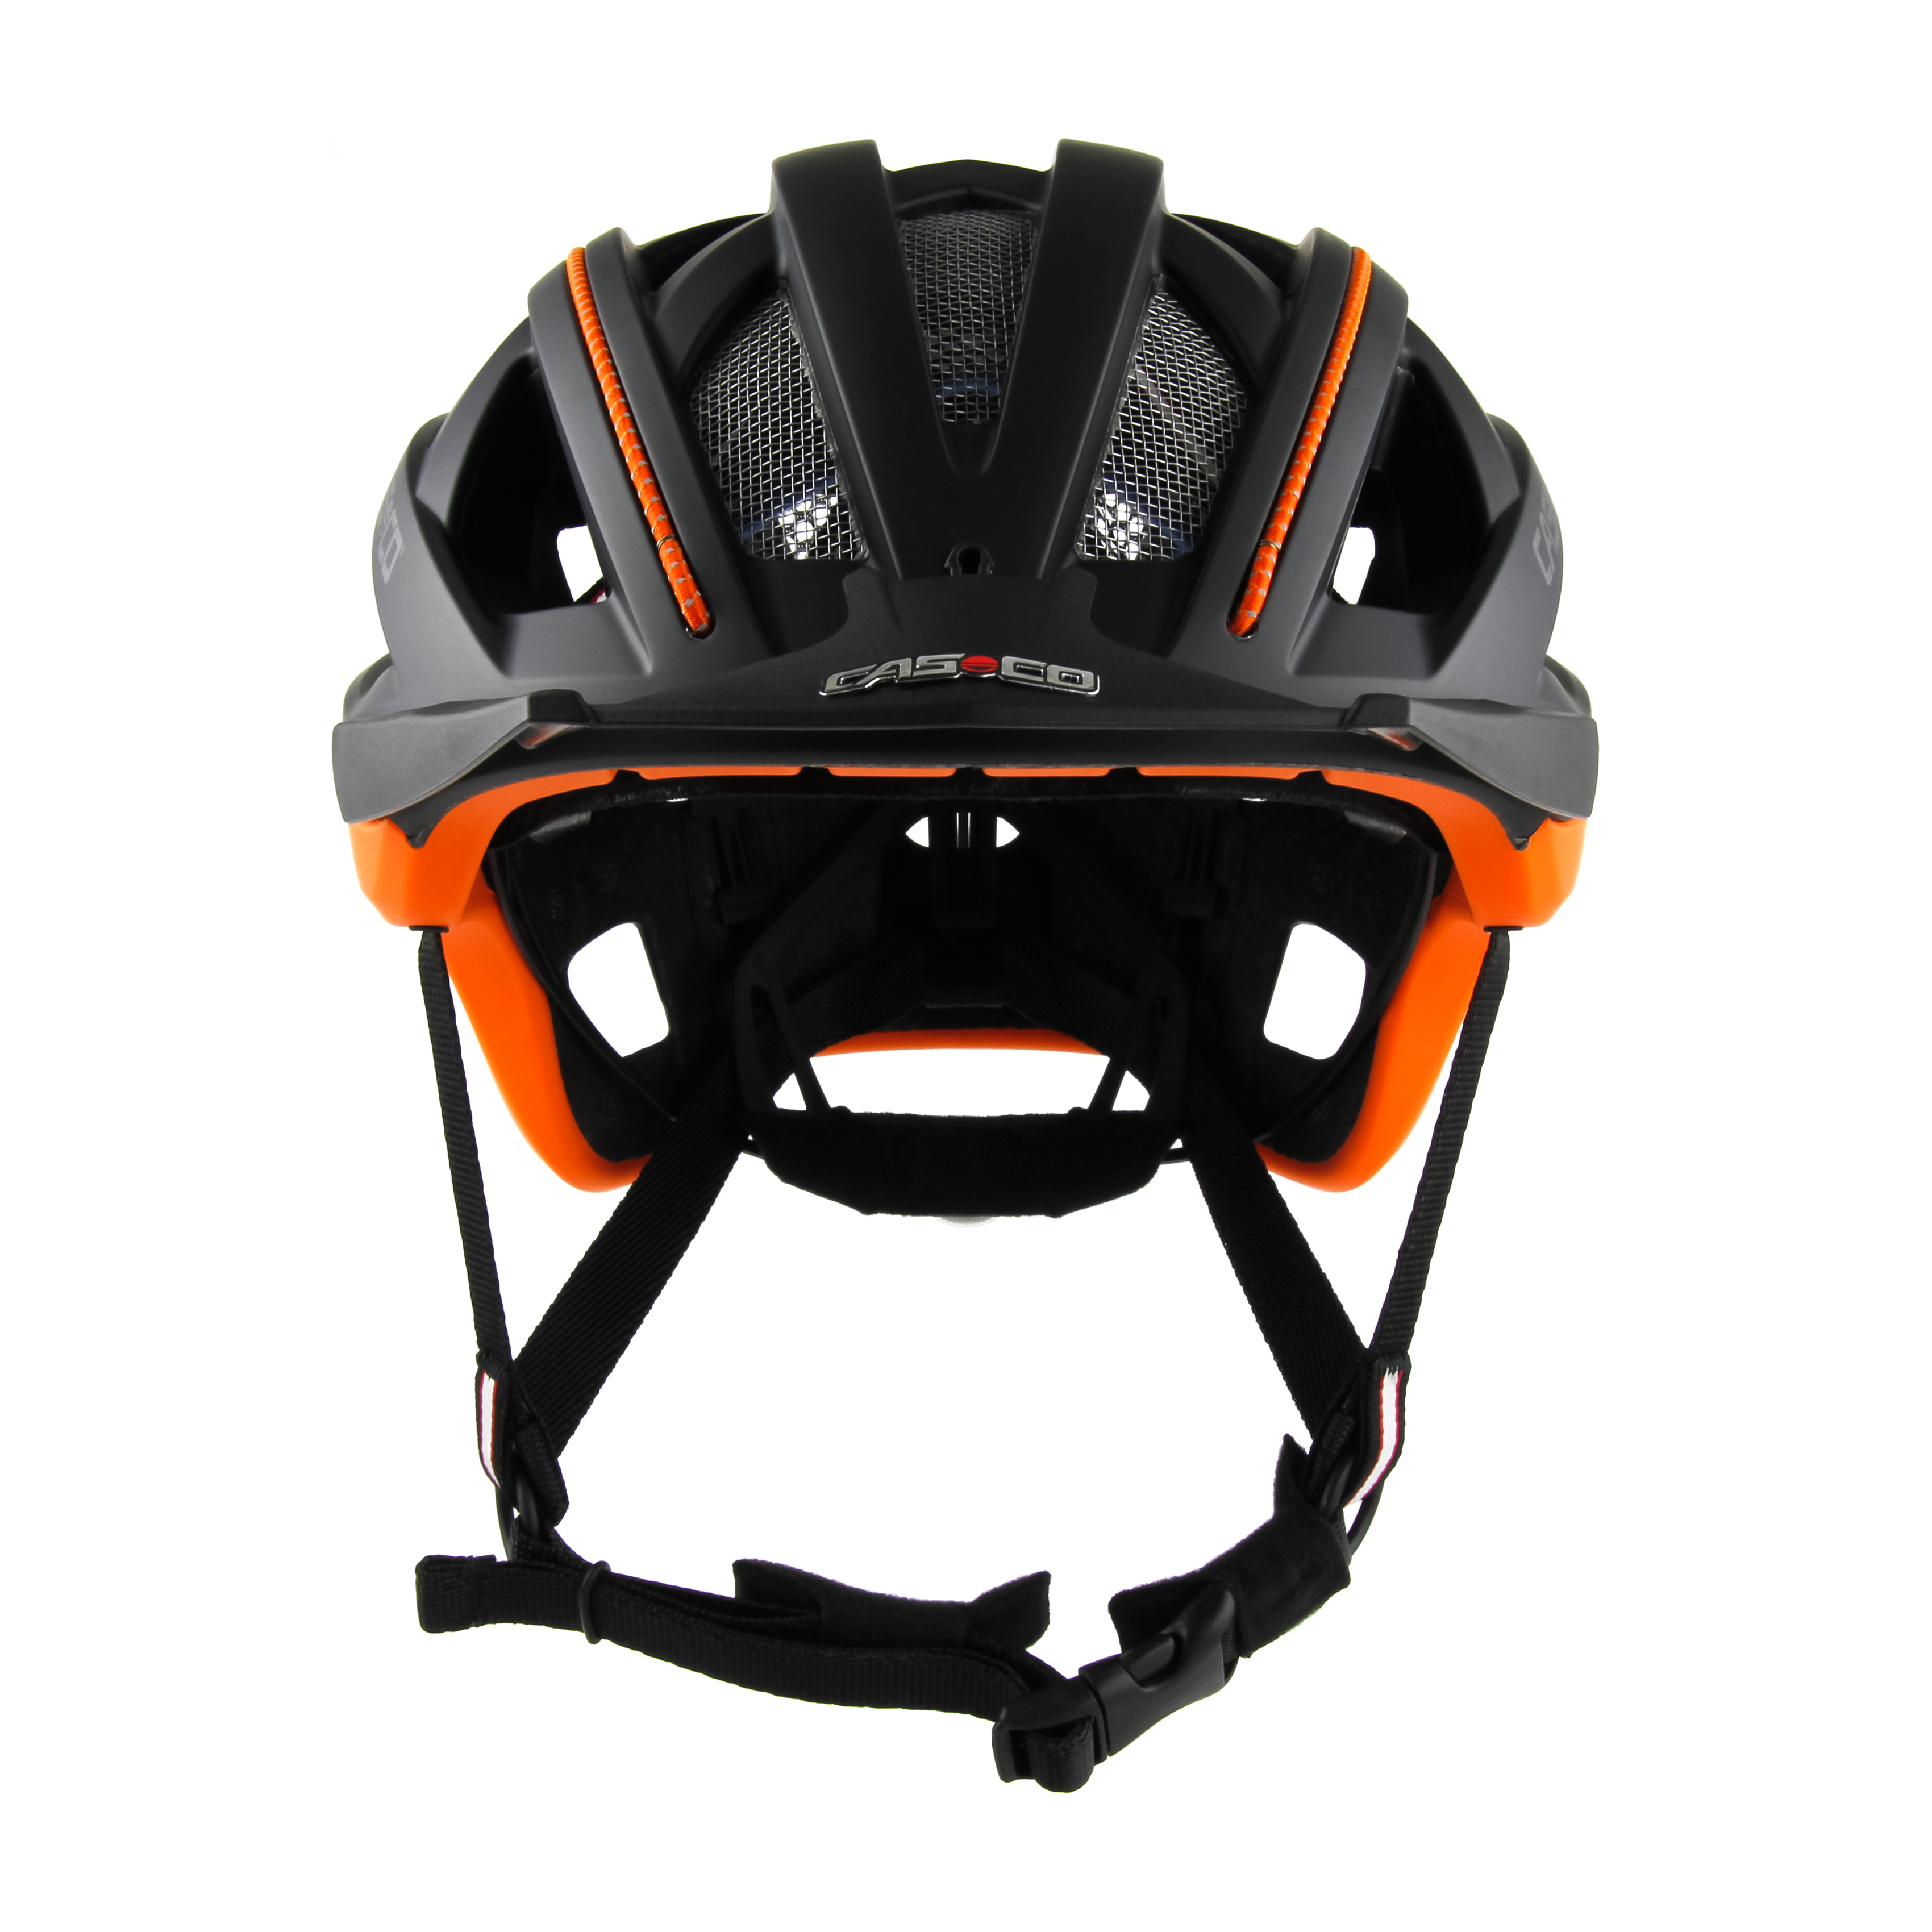 Casco Helm Cuda 2  - orange schwarz matt